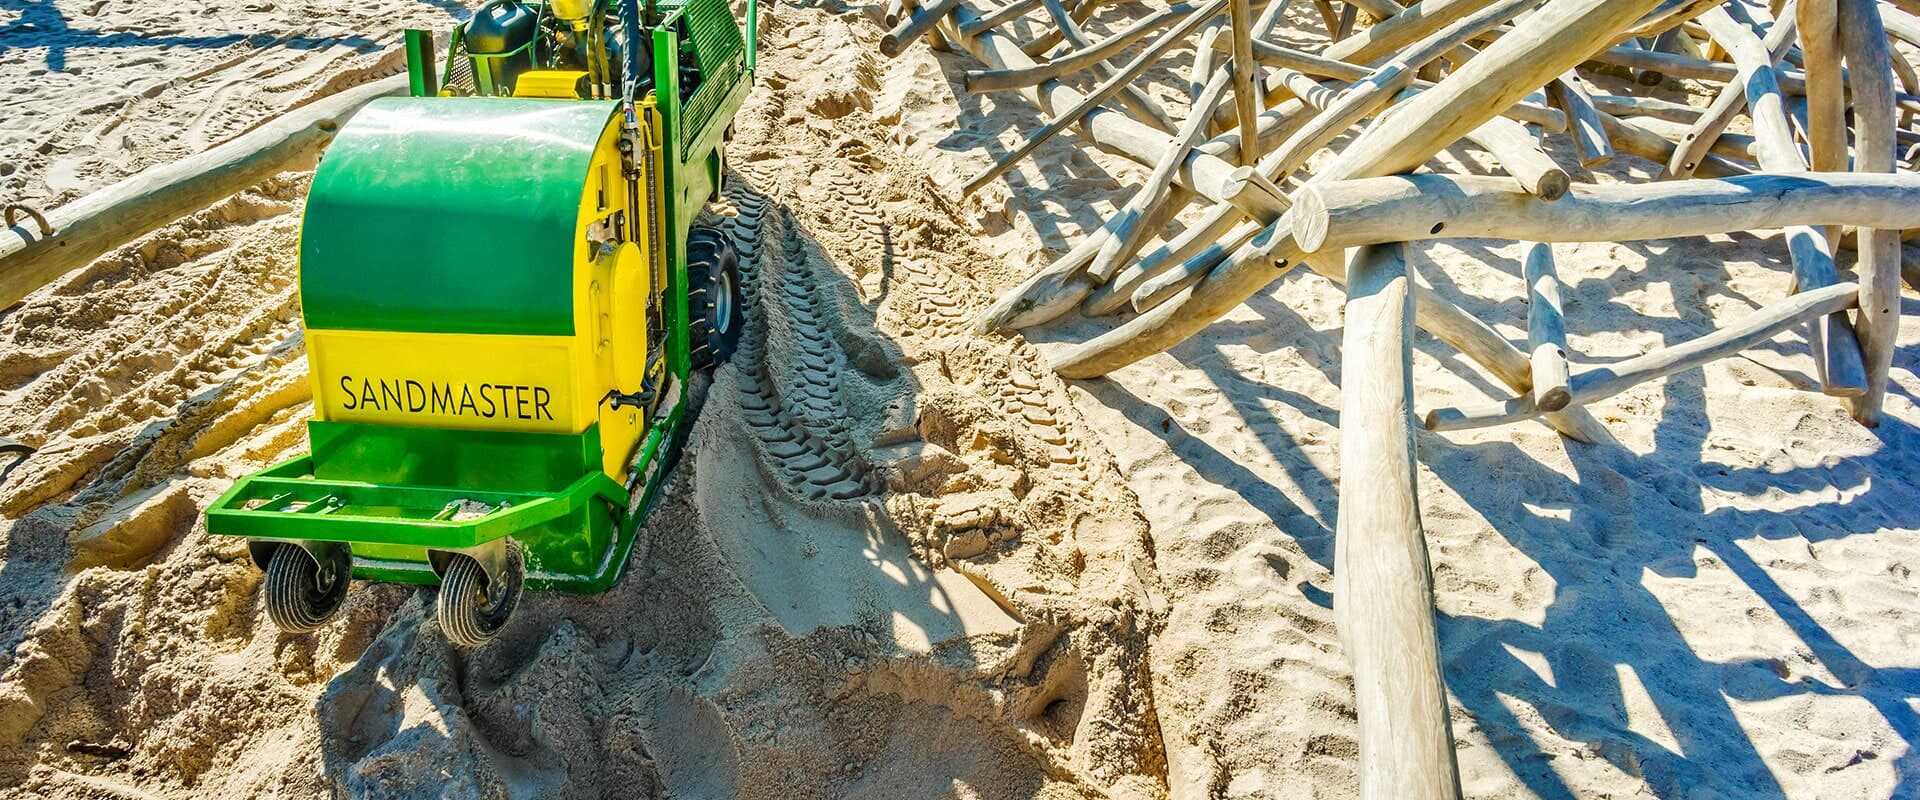 Sand- und Kiesreinigung von Sandmaster